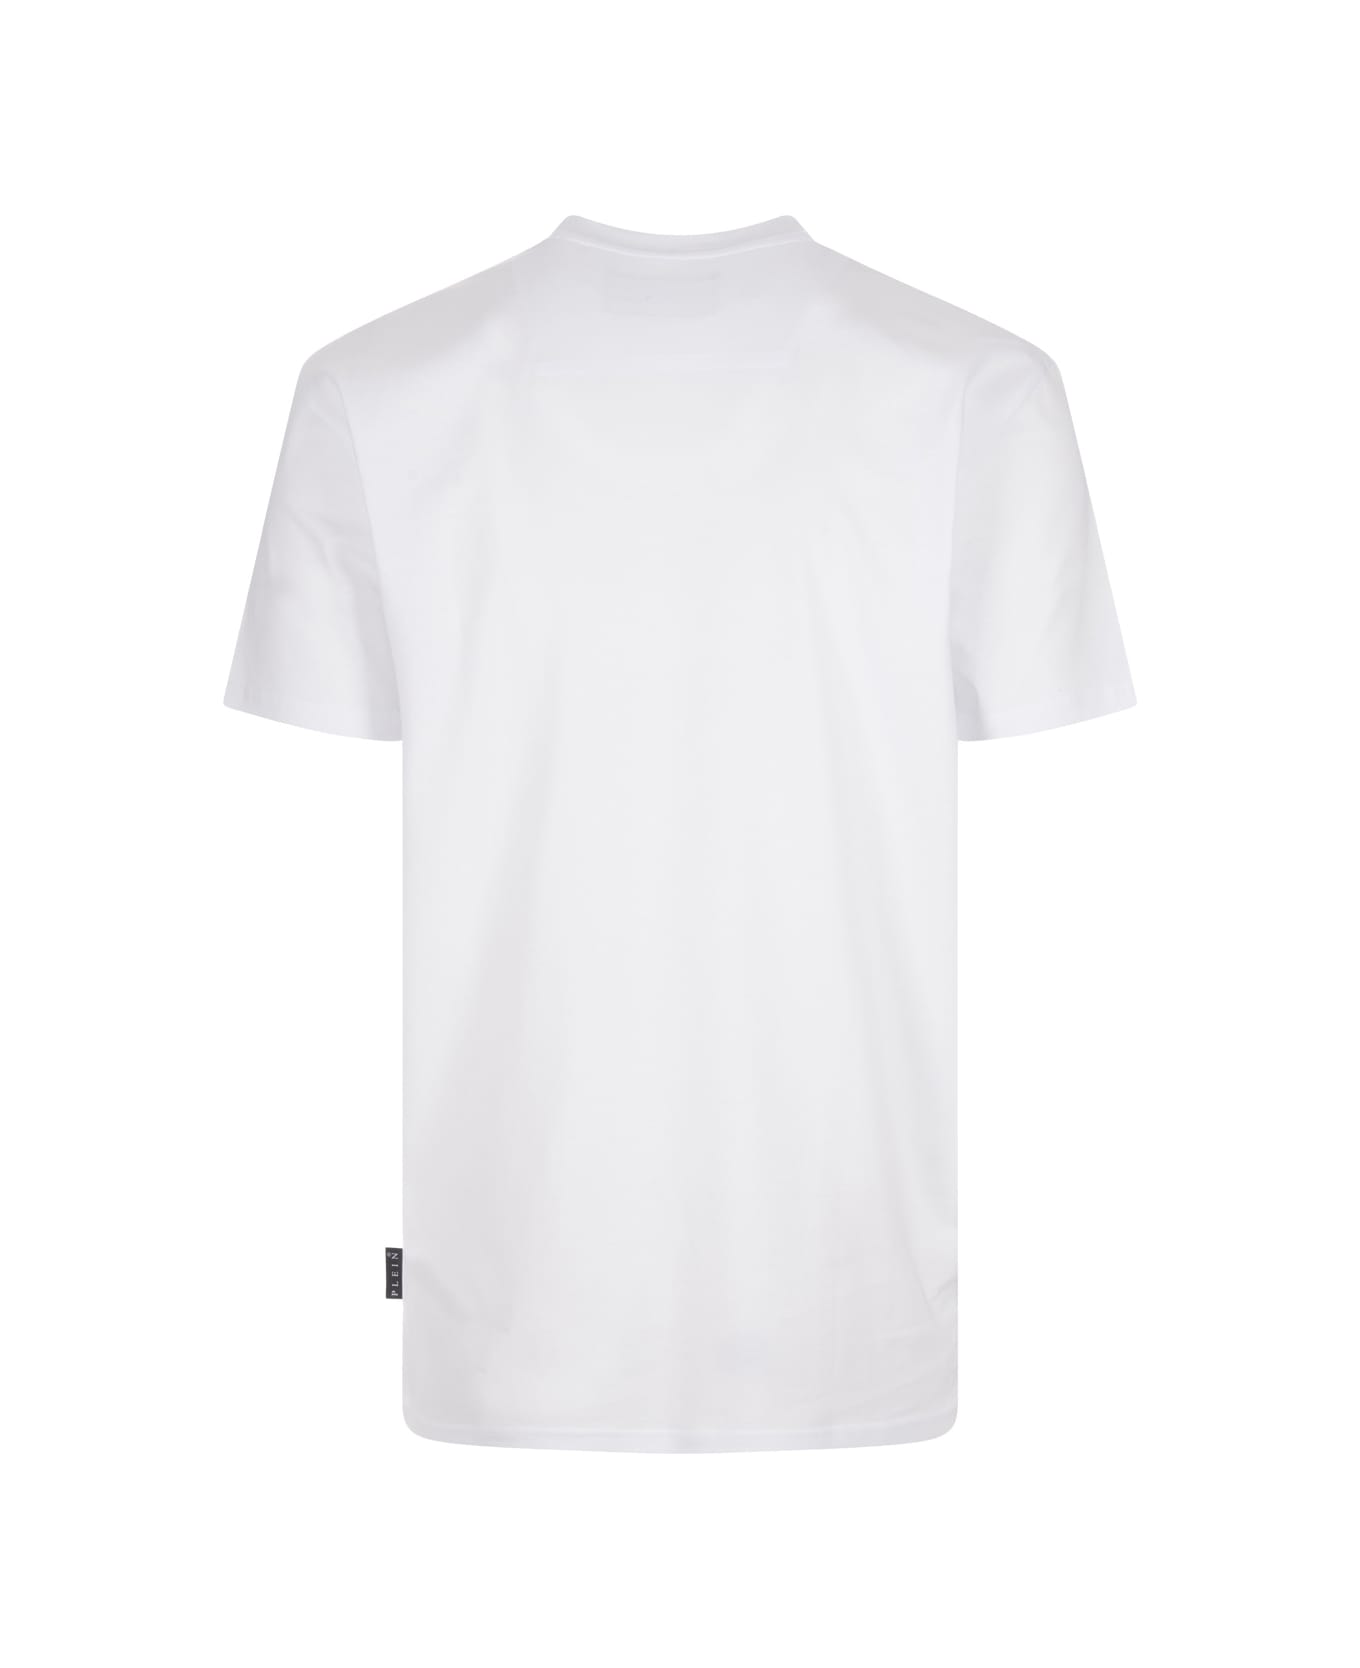 Philipp Plein White T-shirt With Embroidered Logo - White